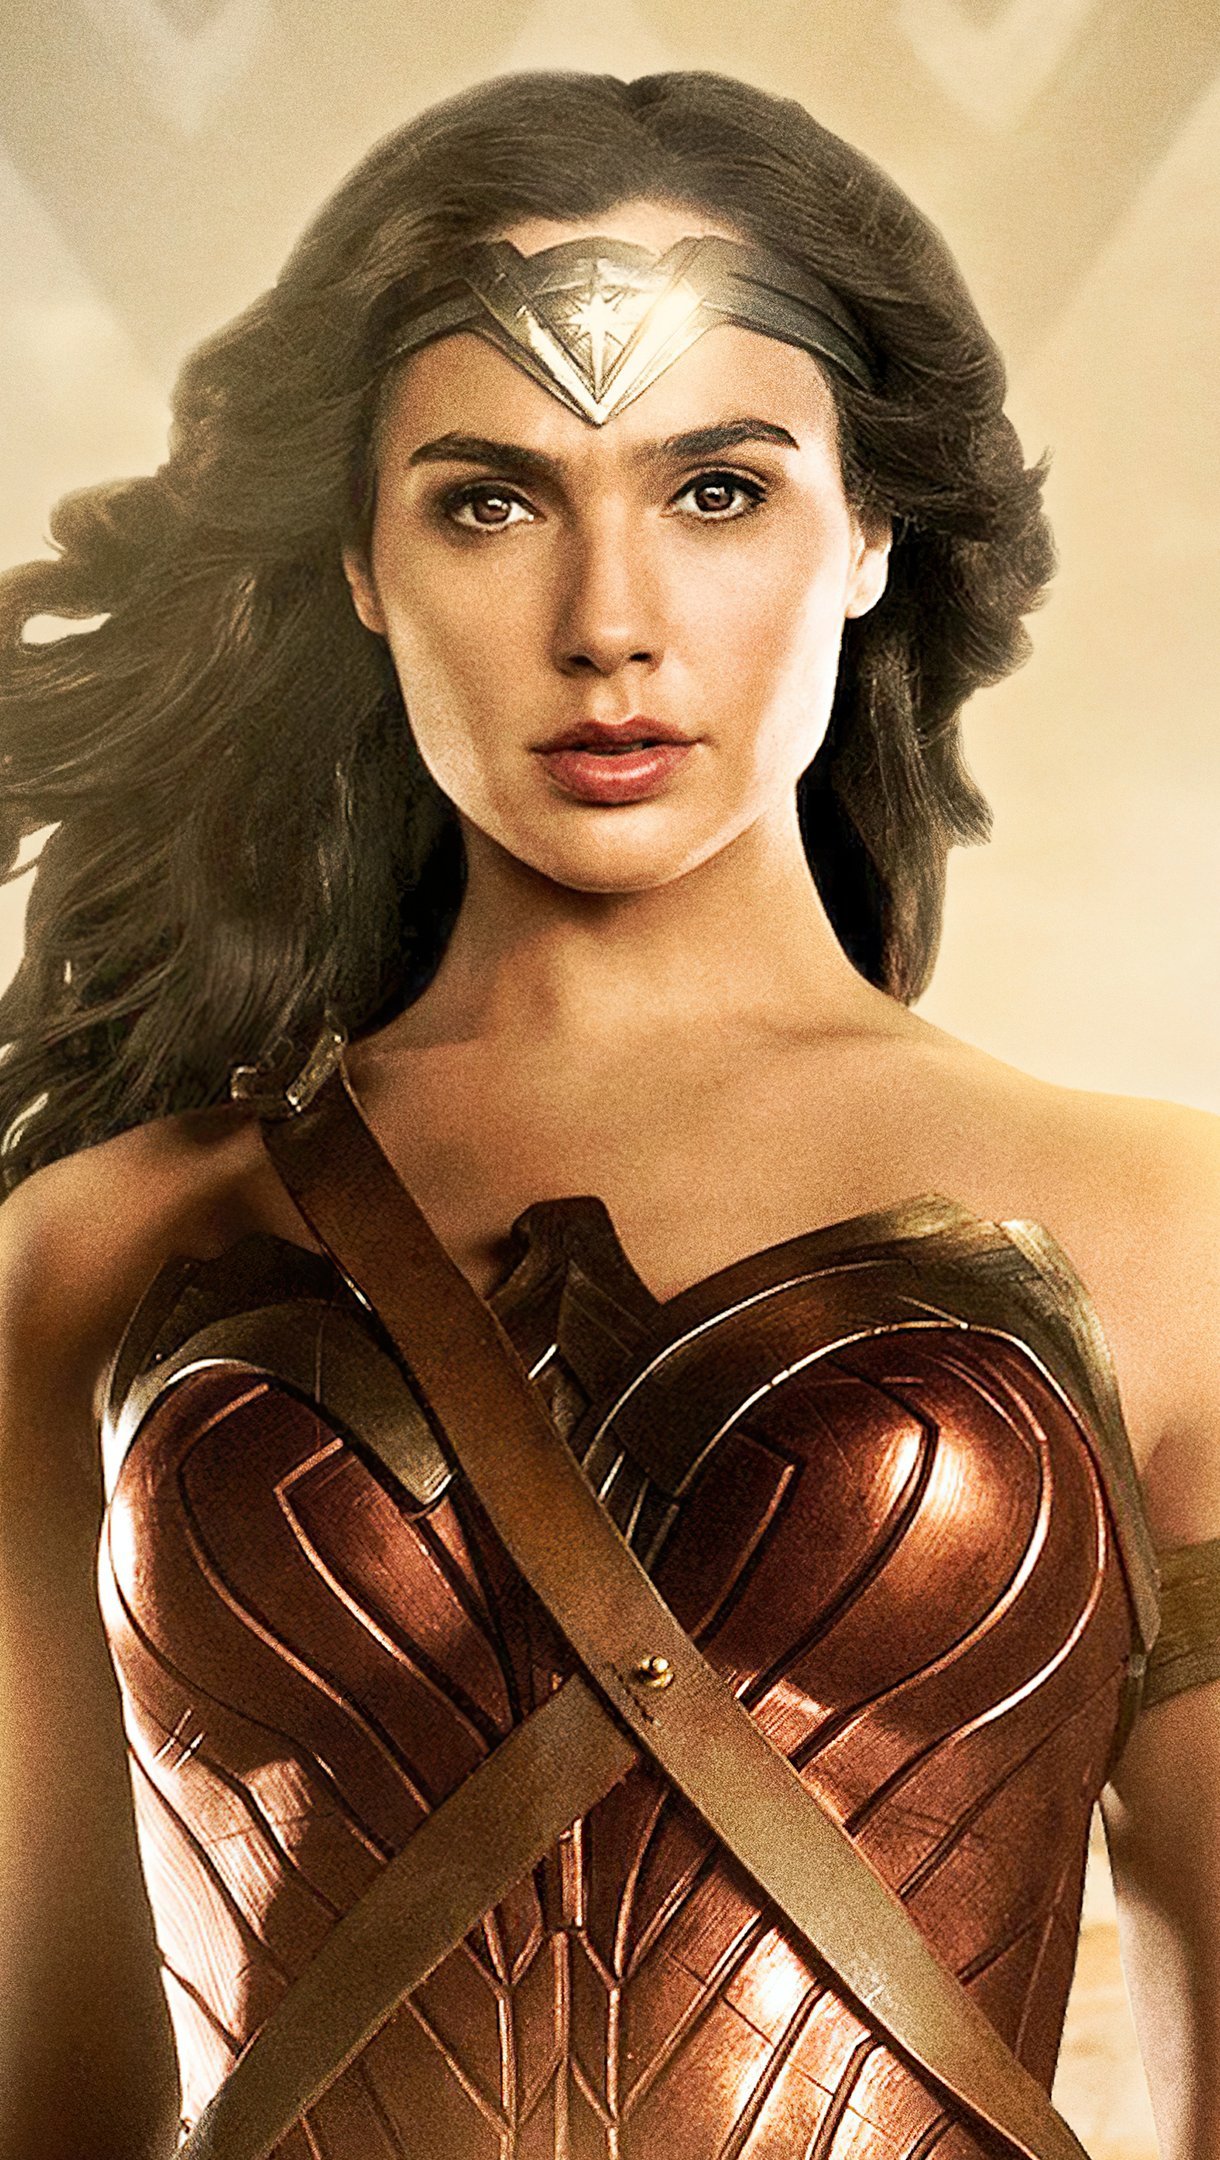 Gal Gadot as Wonder Woman 84 Wallpaper 4k Ultra HD ID:8165